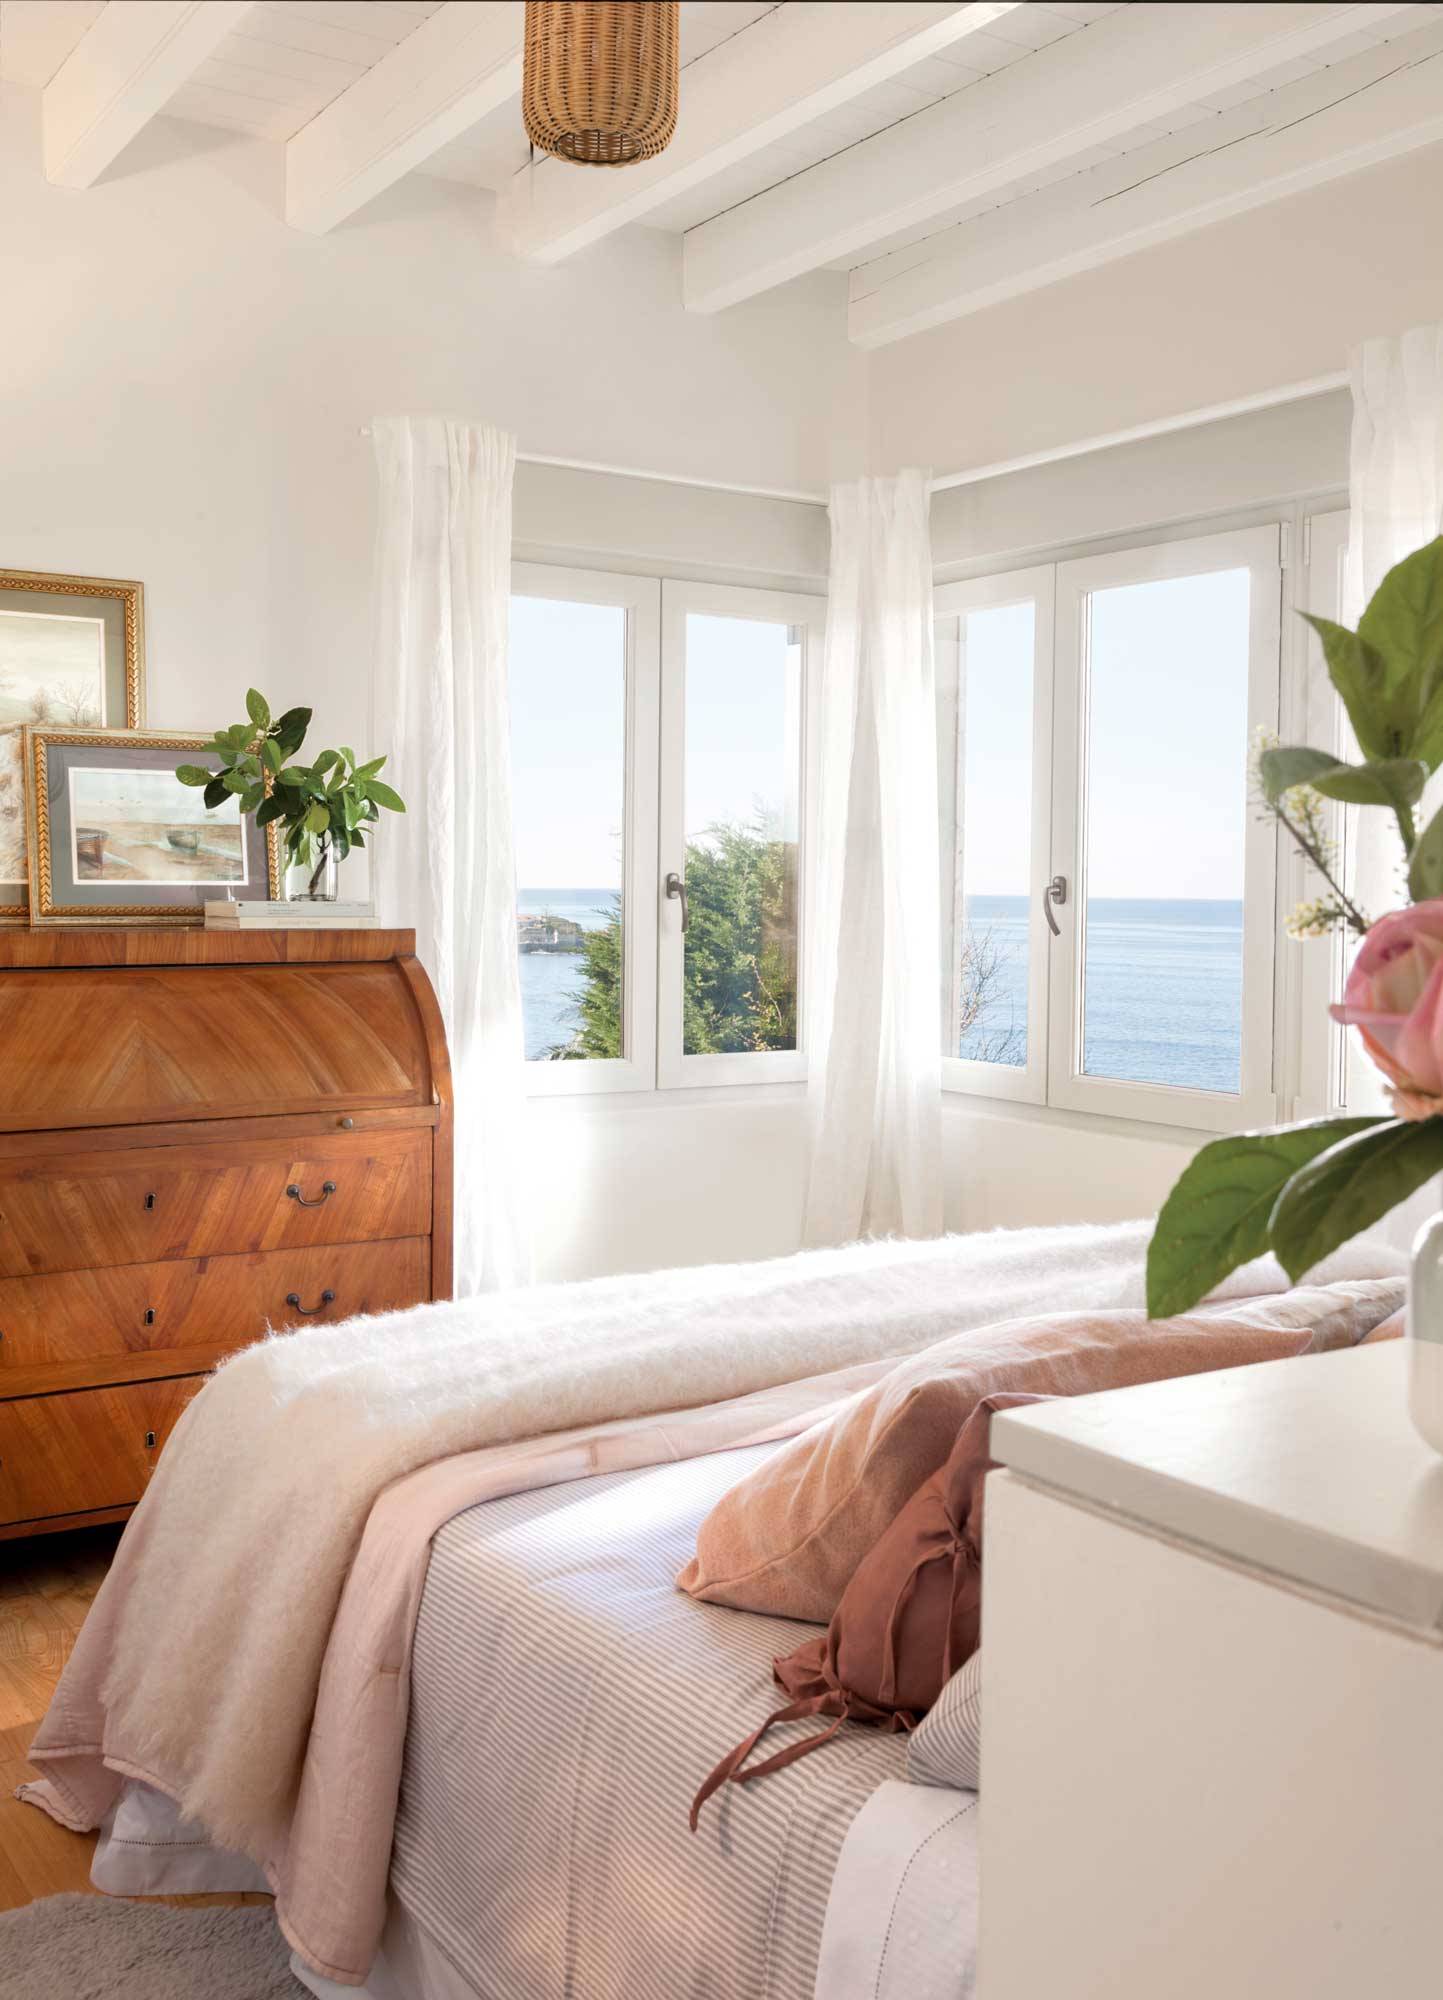 Dormitorio veraniego con toques de rosa pastel y grandes vistas al mar